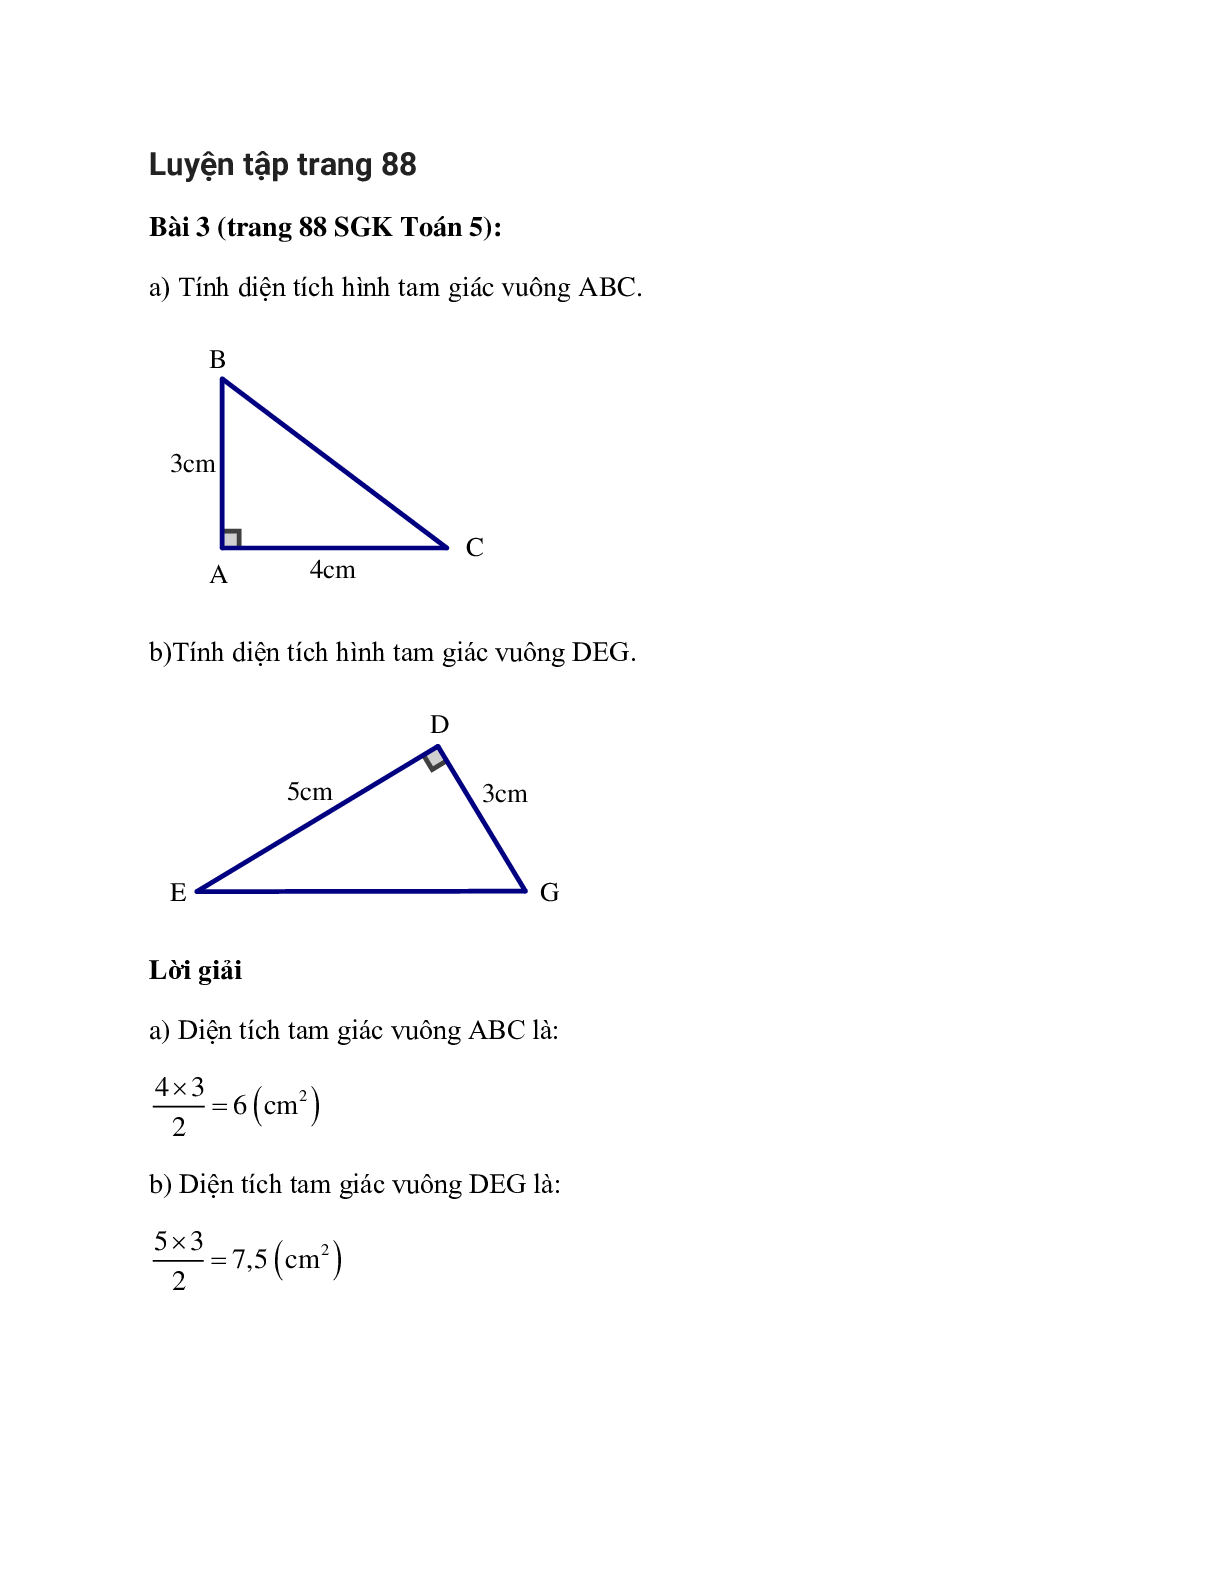 Tính diện tích hình tam giác vuông ABC Bài 3 trang 88 SGK Toán 5 (trang 1)